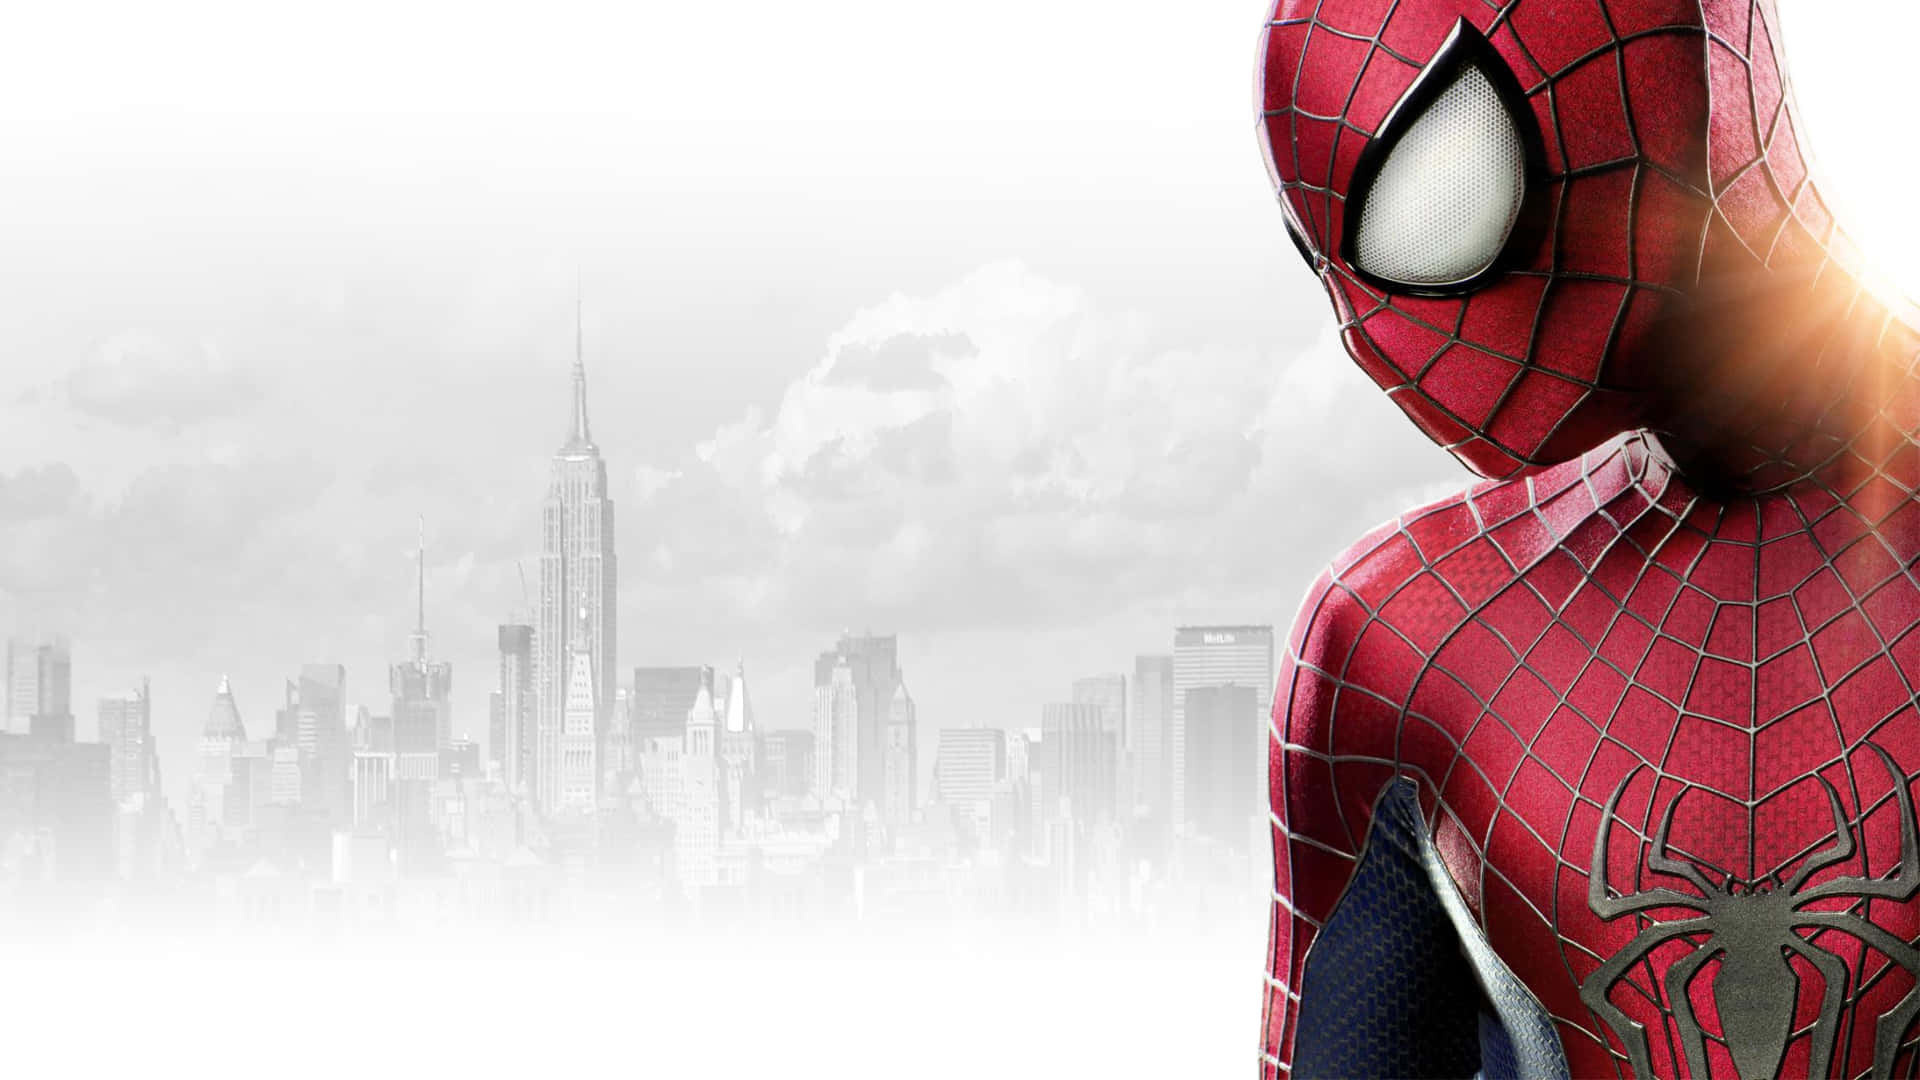 Spiderman Se Balancea Por La Ciudad.